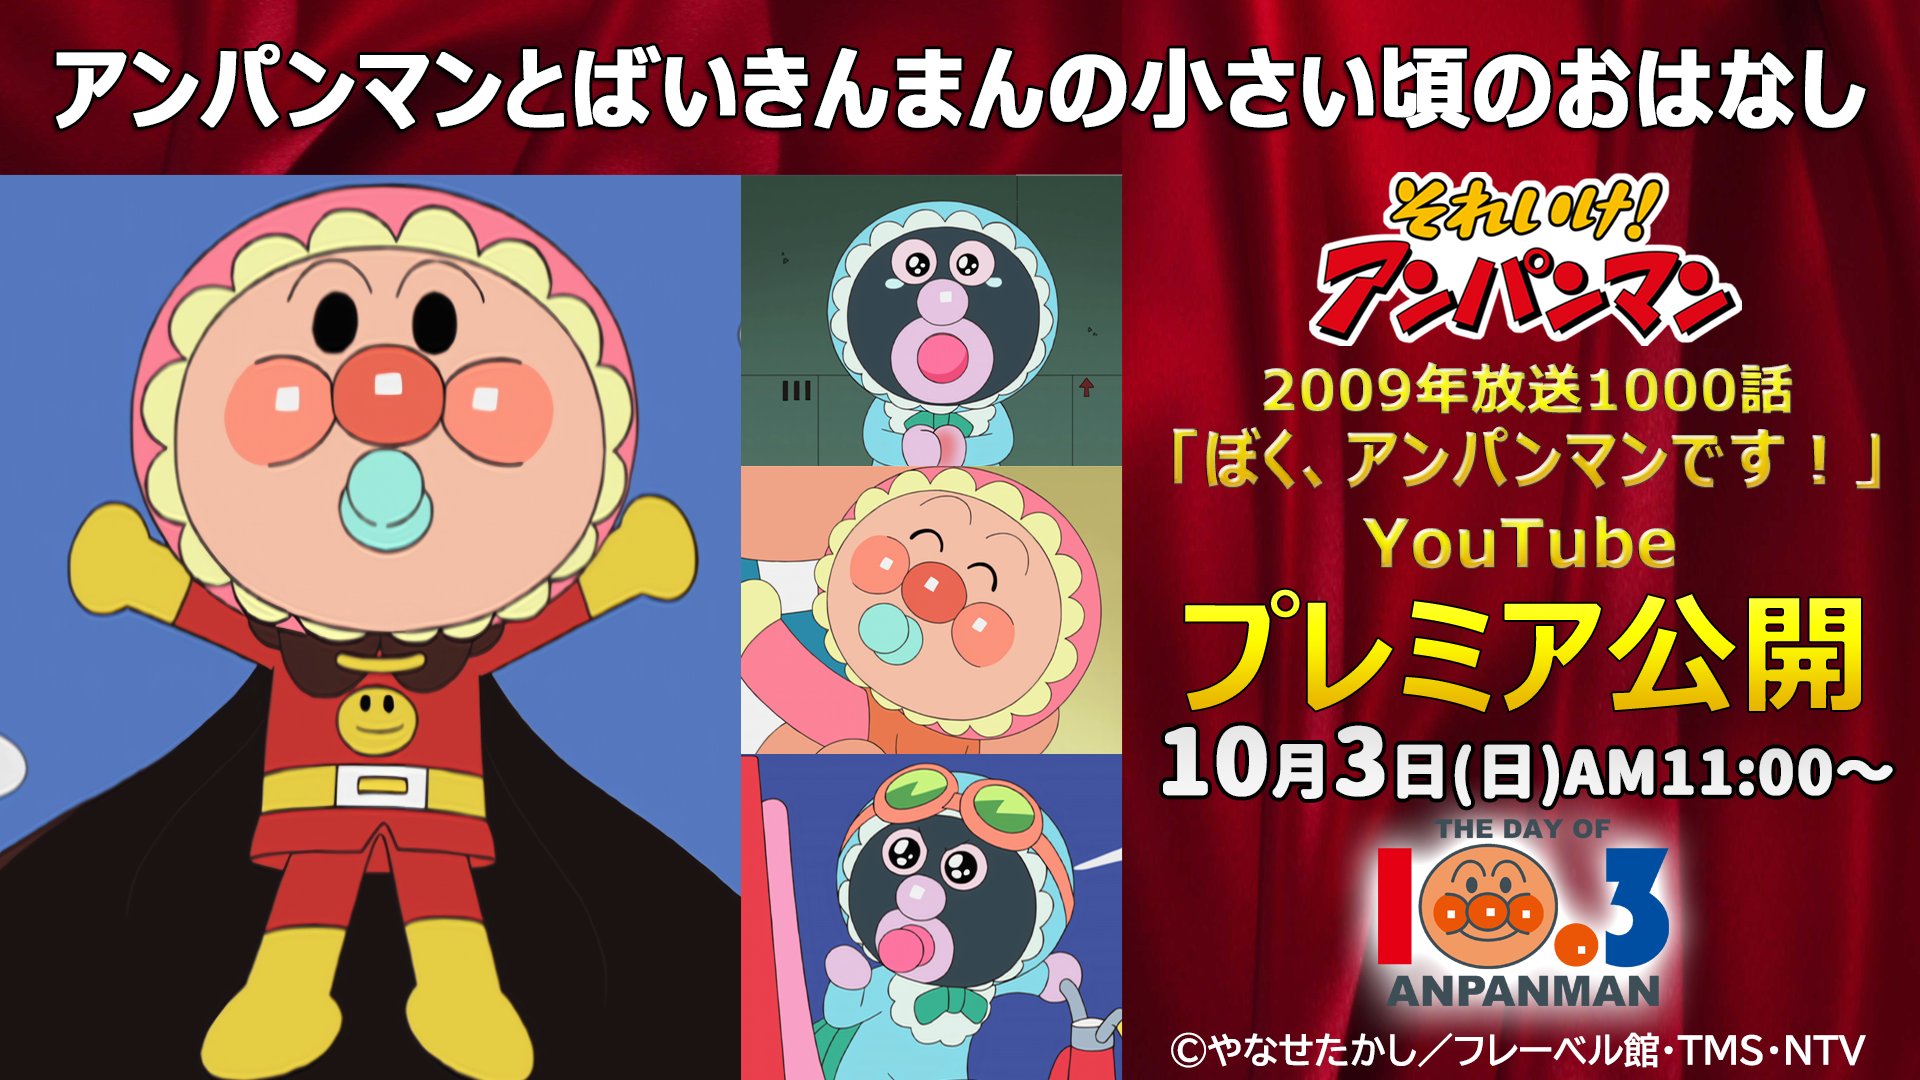 Youtube Japan 10 3 は アンパンマンの日 本日11時 それいけ アンパンマン アニメ 公式 Youtube チャンネルで 第1000話 を プレミア公開 アンパンマン と ばいきんまん の可愛い赤ちゃん時代に注目 第1000話 ぼく アンパンマンです